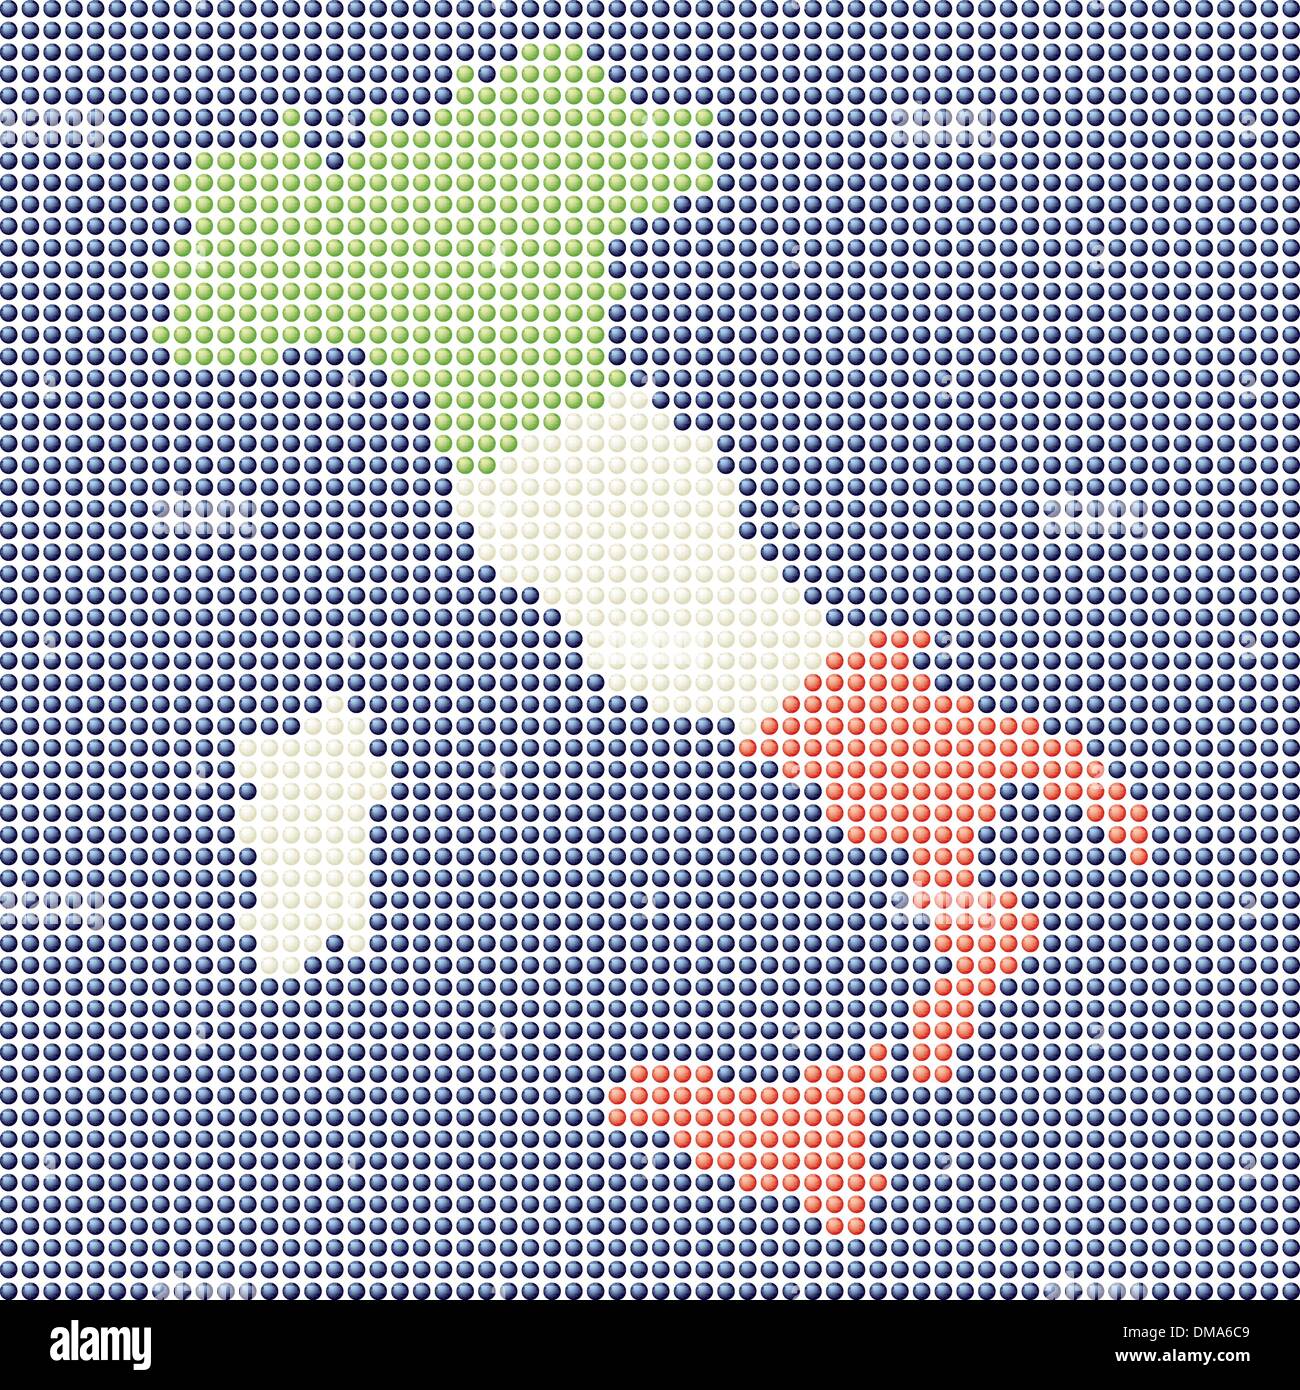 Stilisierte Landkarte von Italien Stock Vektor